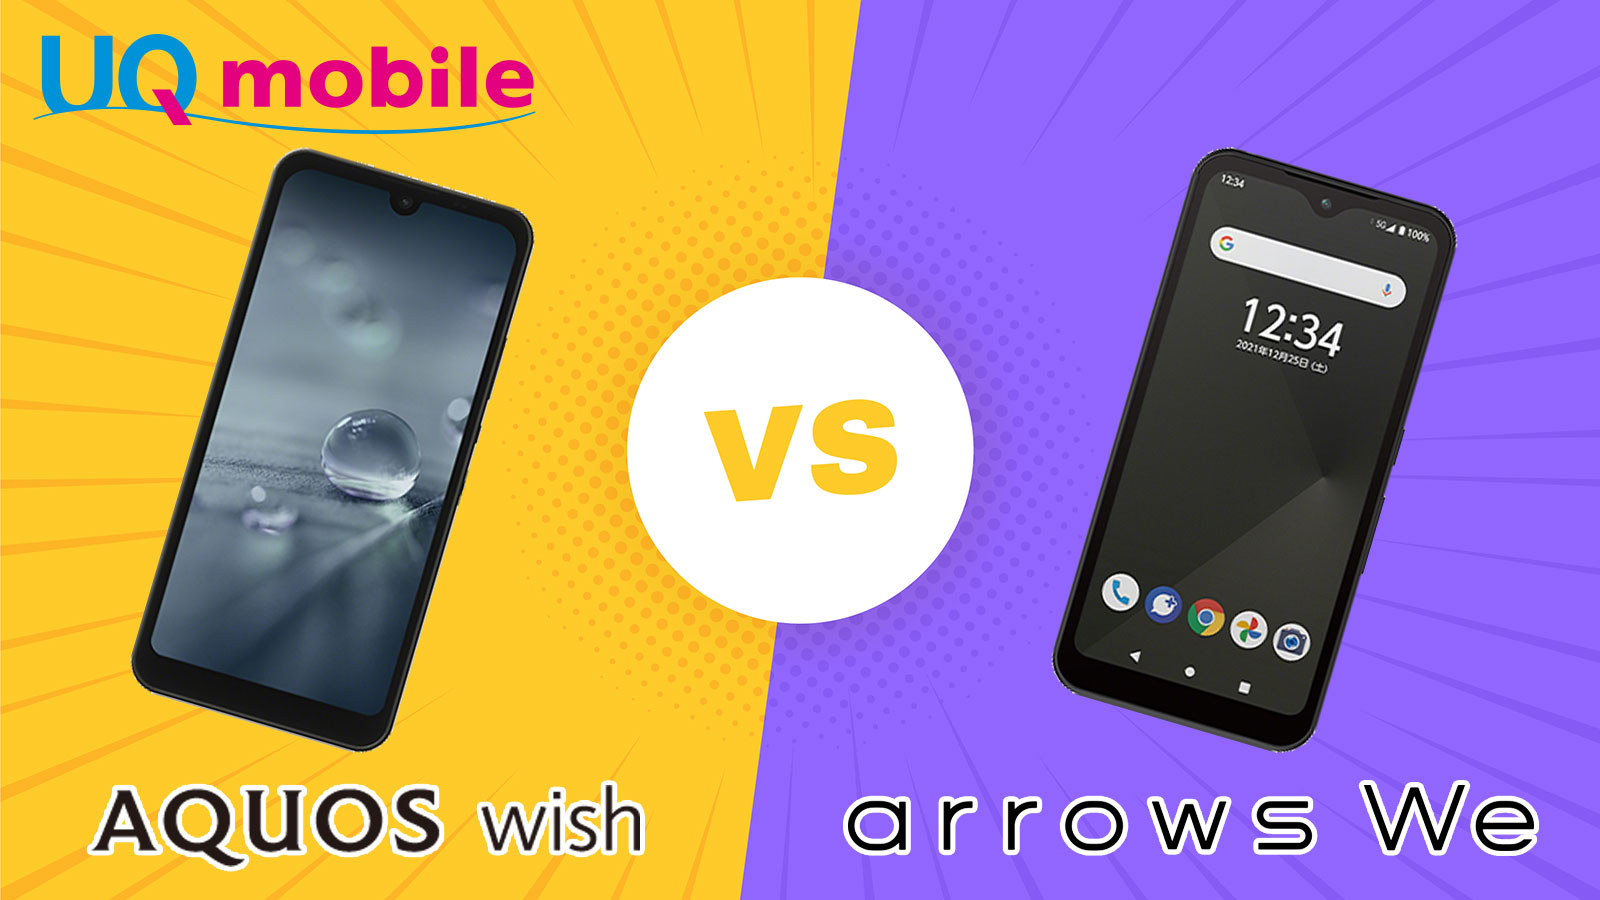 【完全比較】AQUOS wish vs Arrows We スペック・カメラ画質・バッテリー持ち